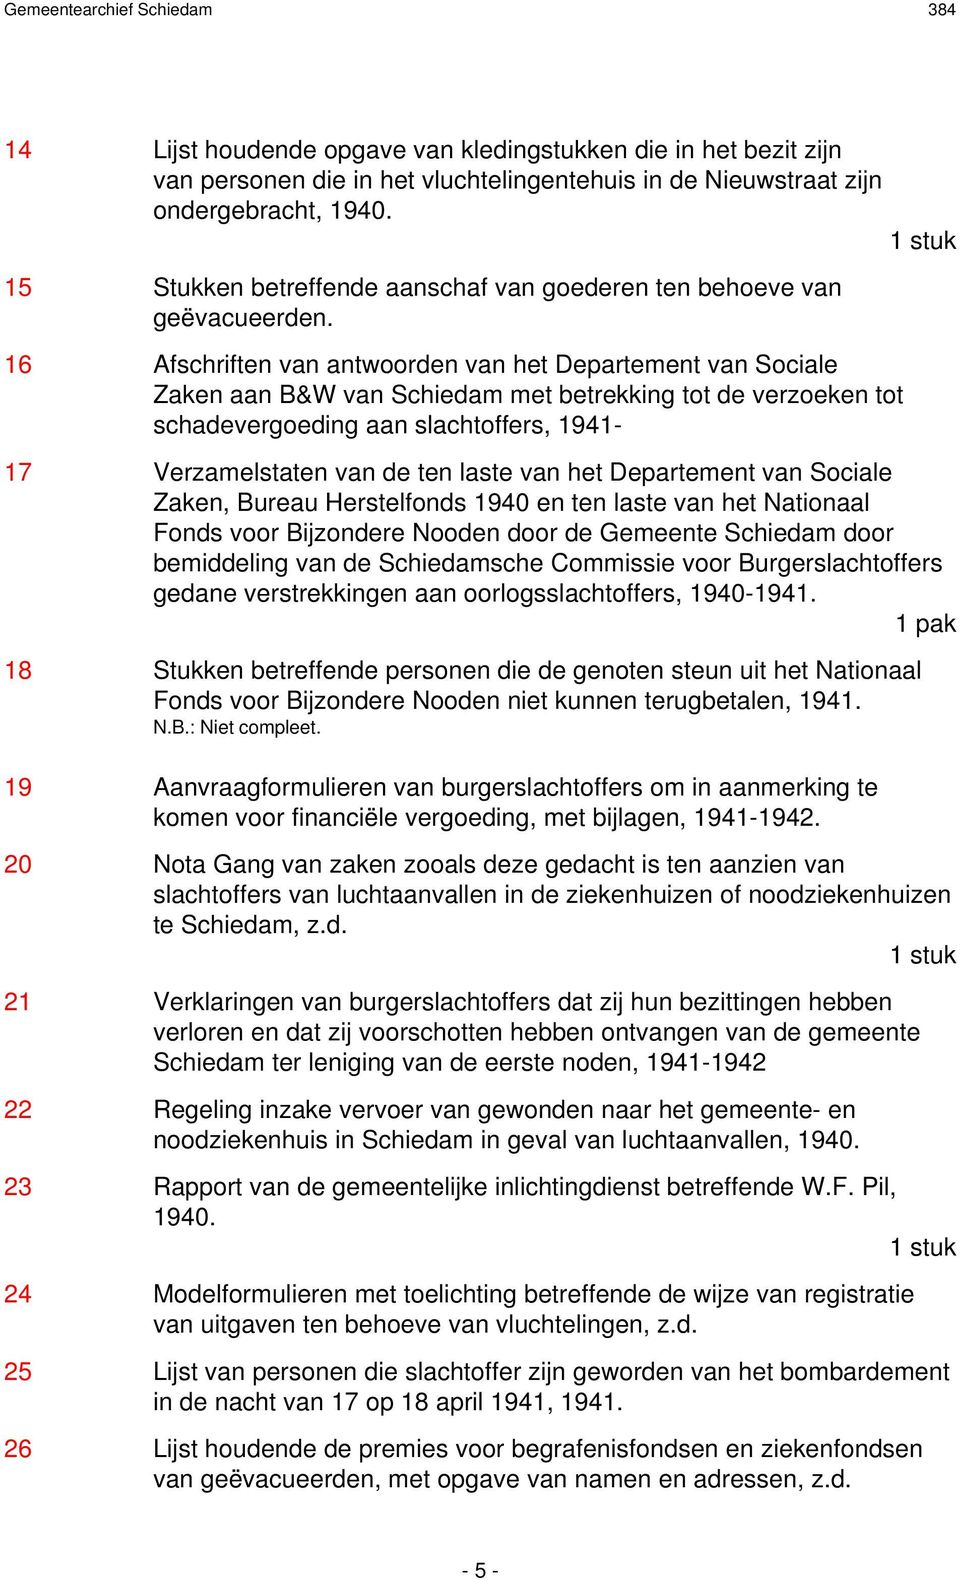 16 Afschriften van antwoorden van het Departement van Sociale Zaken aan B&W van Schiedam met betrekking tot de verzoeken tot schadevergoeding aan slachtoffers, 1941-17 Verzamelstaten van de ten laste